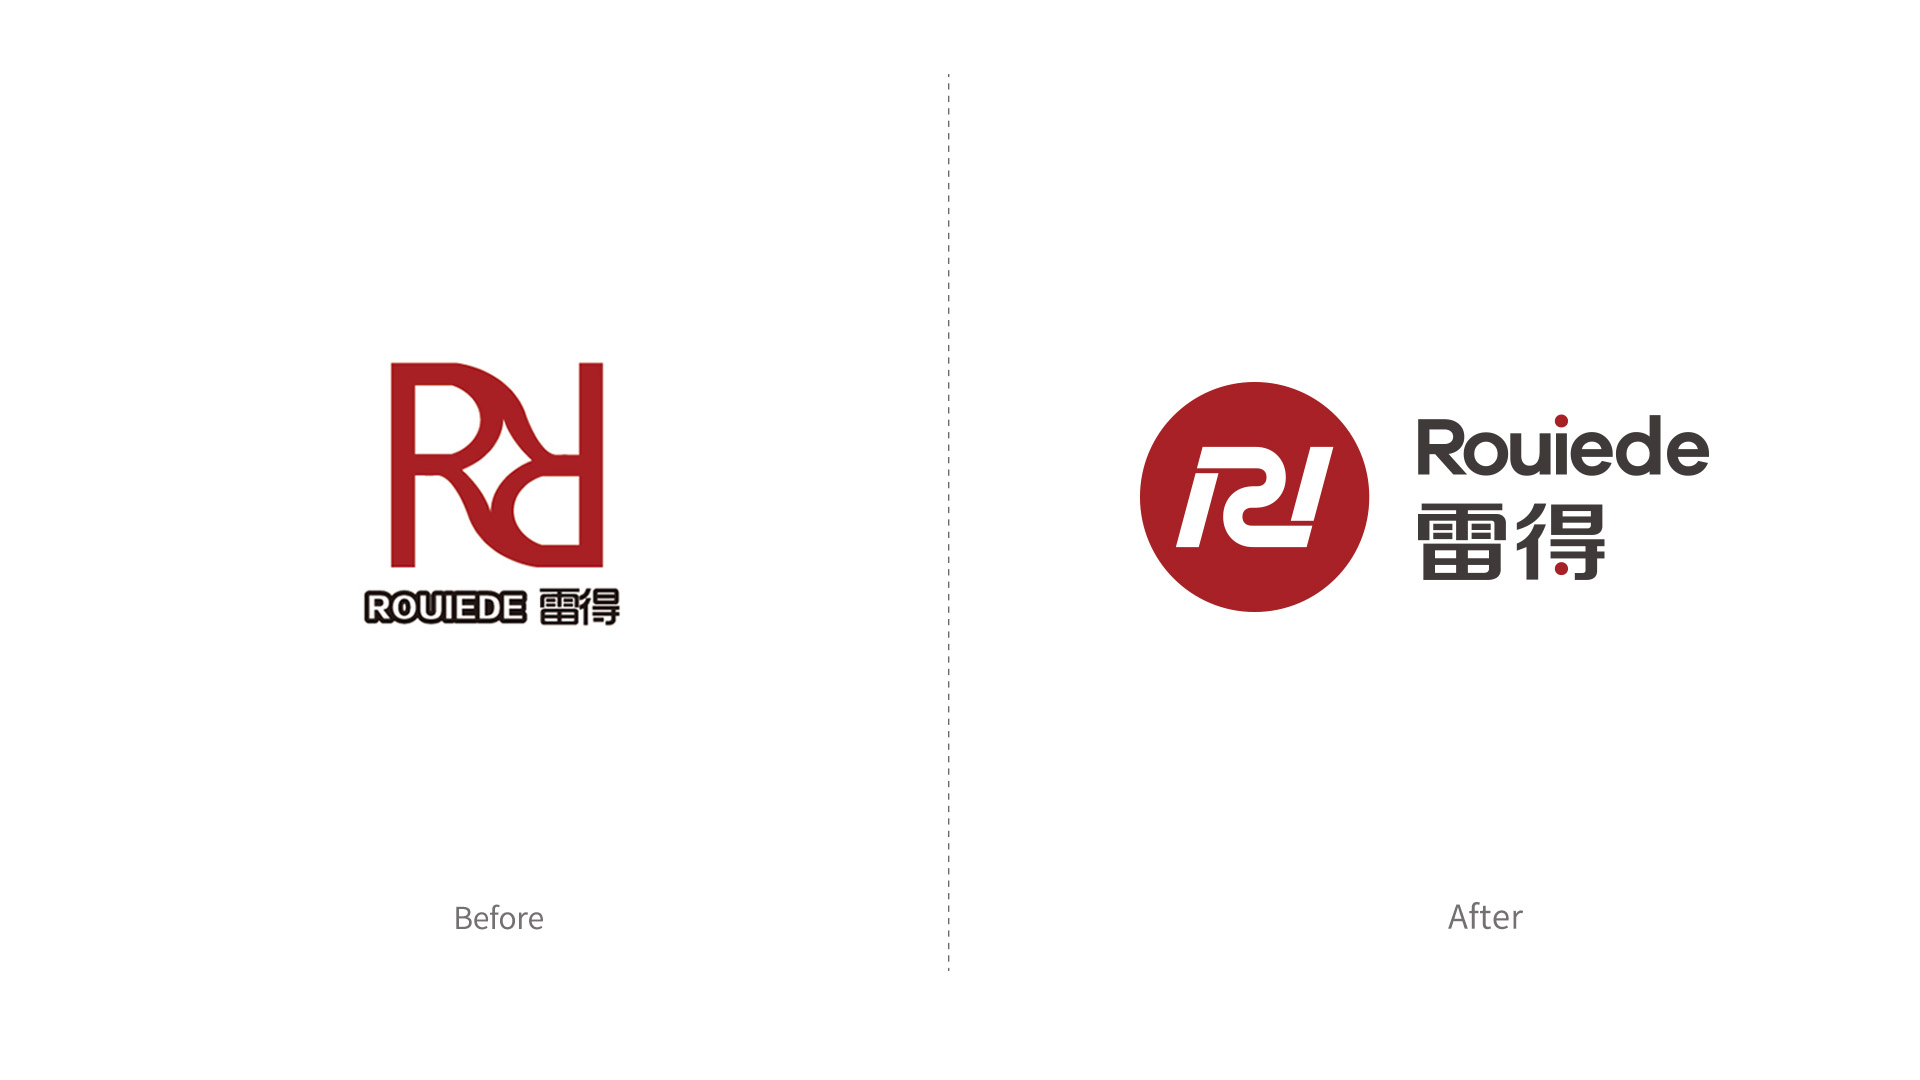 雷得电磁炉品牌形象改造升级logo设计